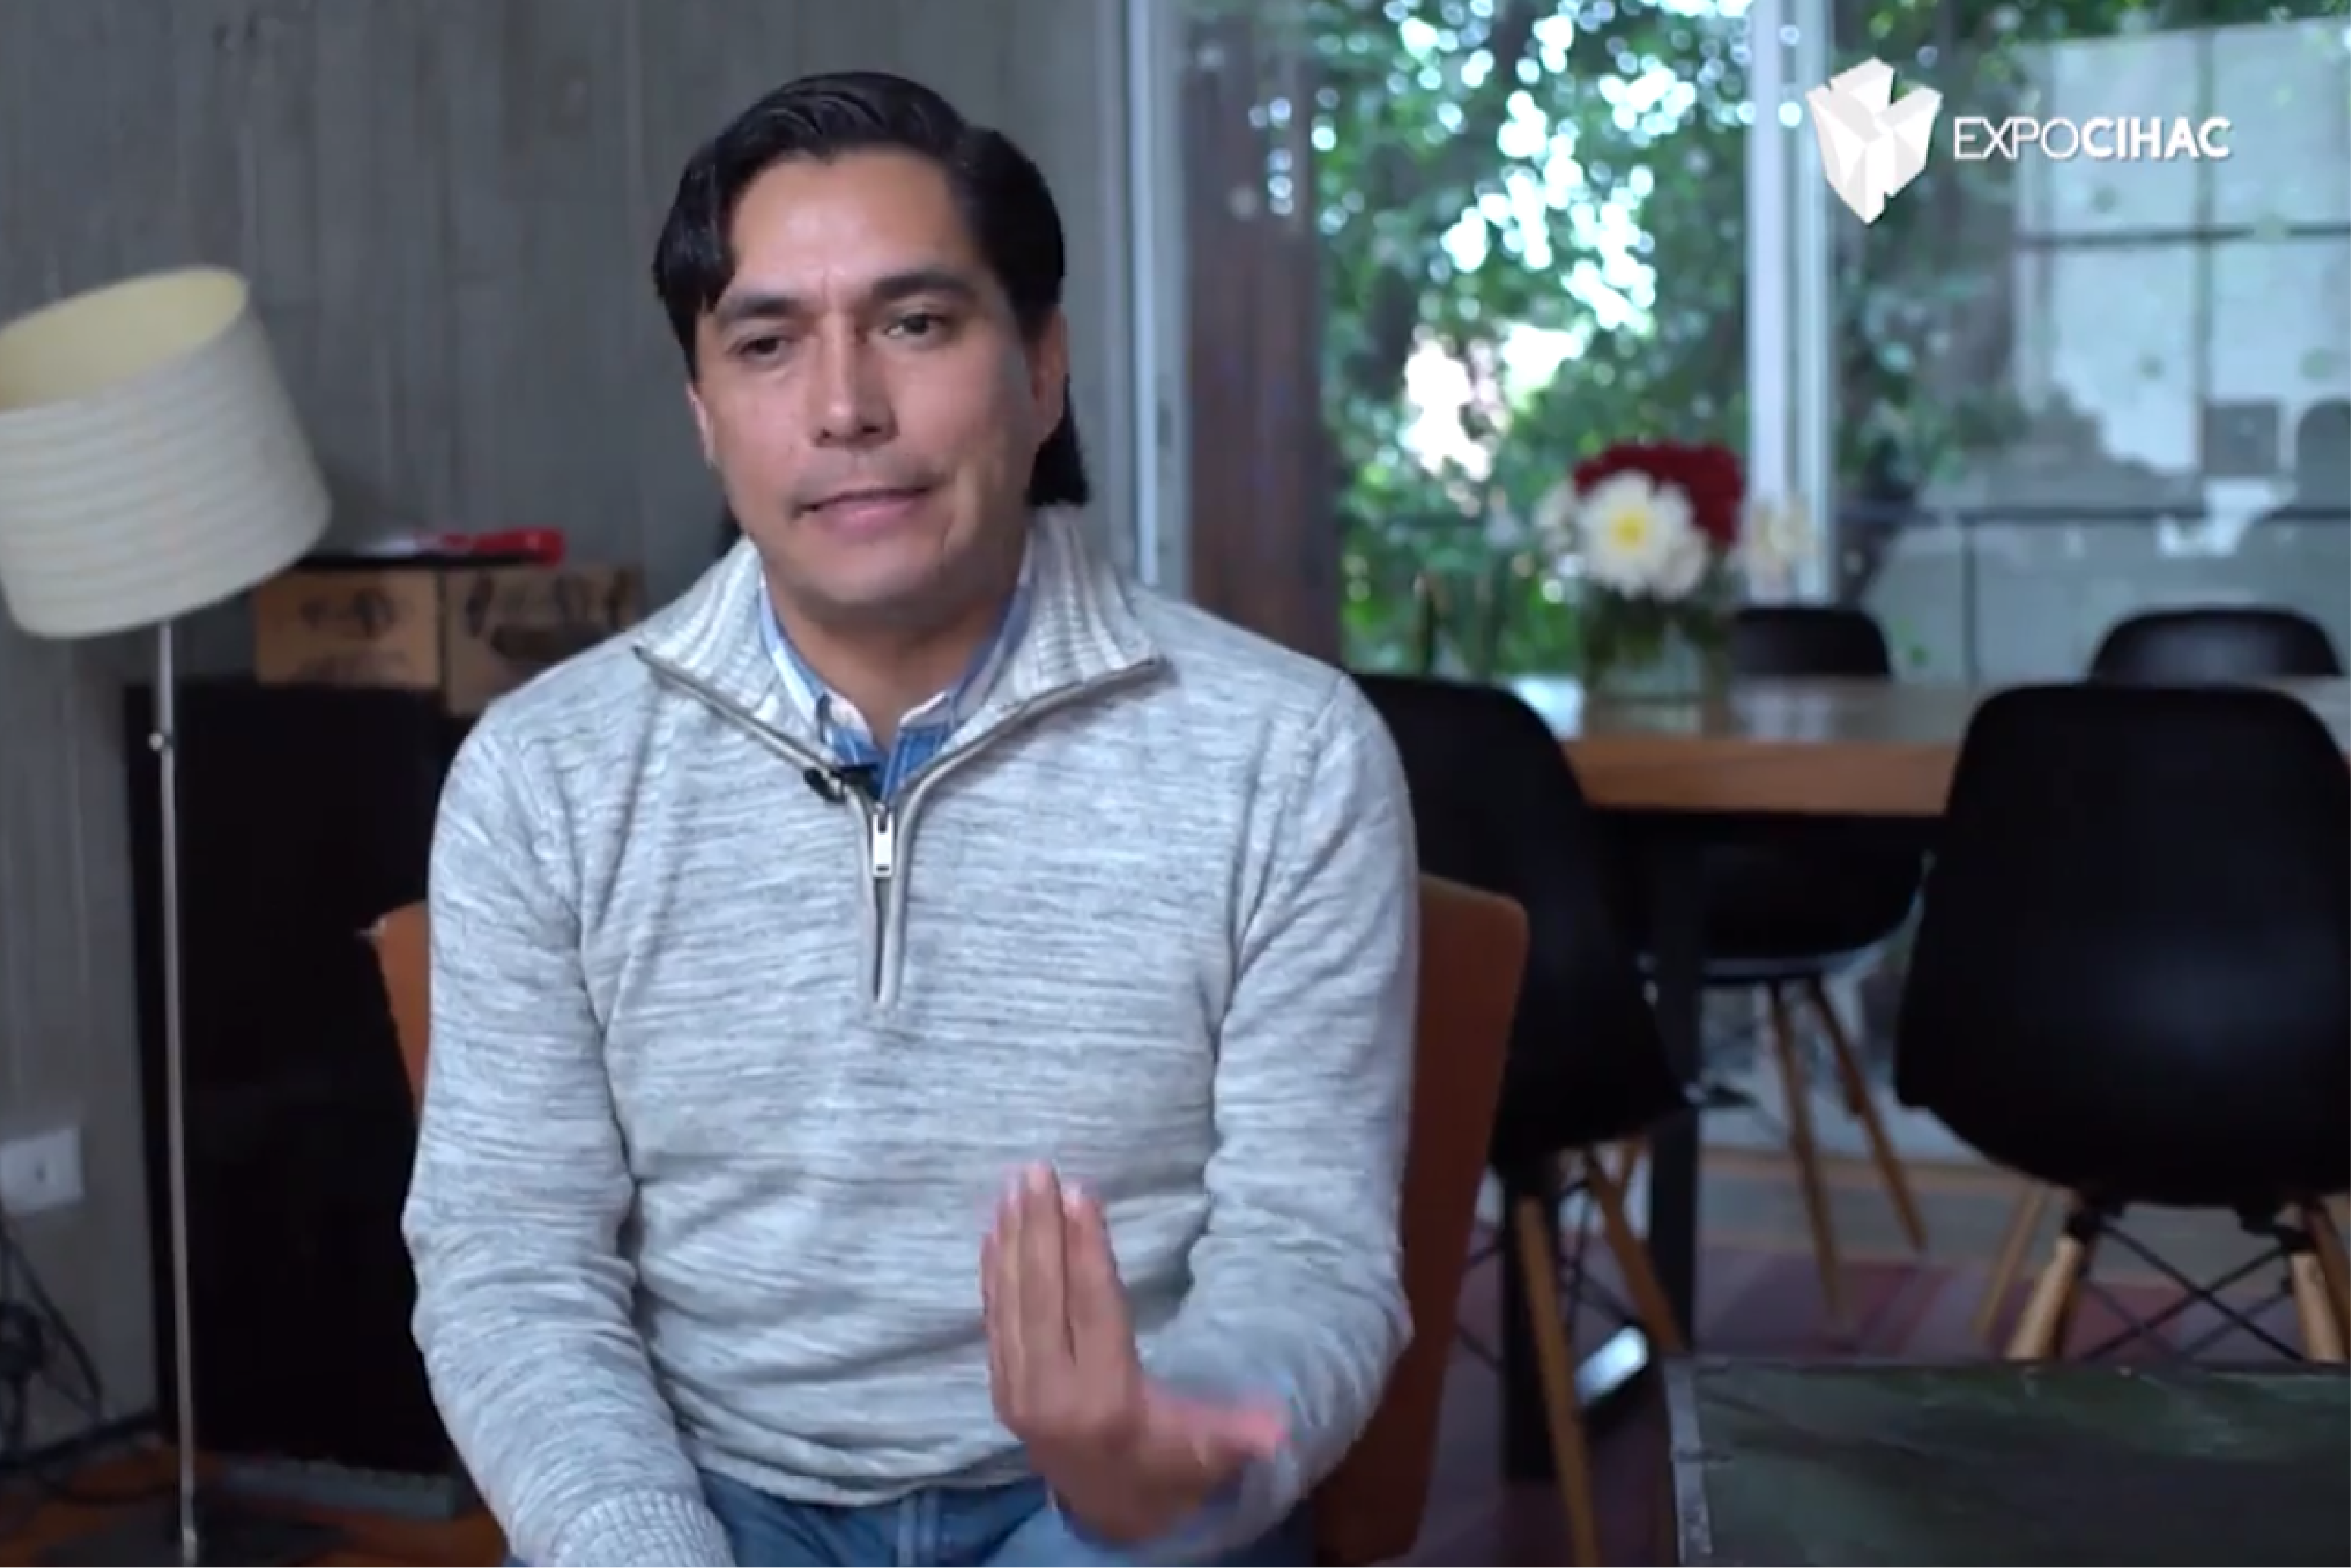 Video: Salvador Herrera Montes Urbanista y Paisajista